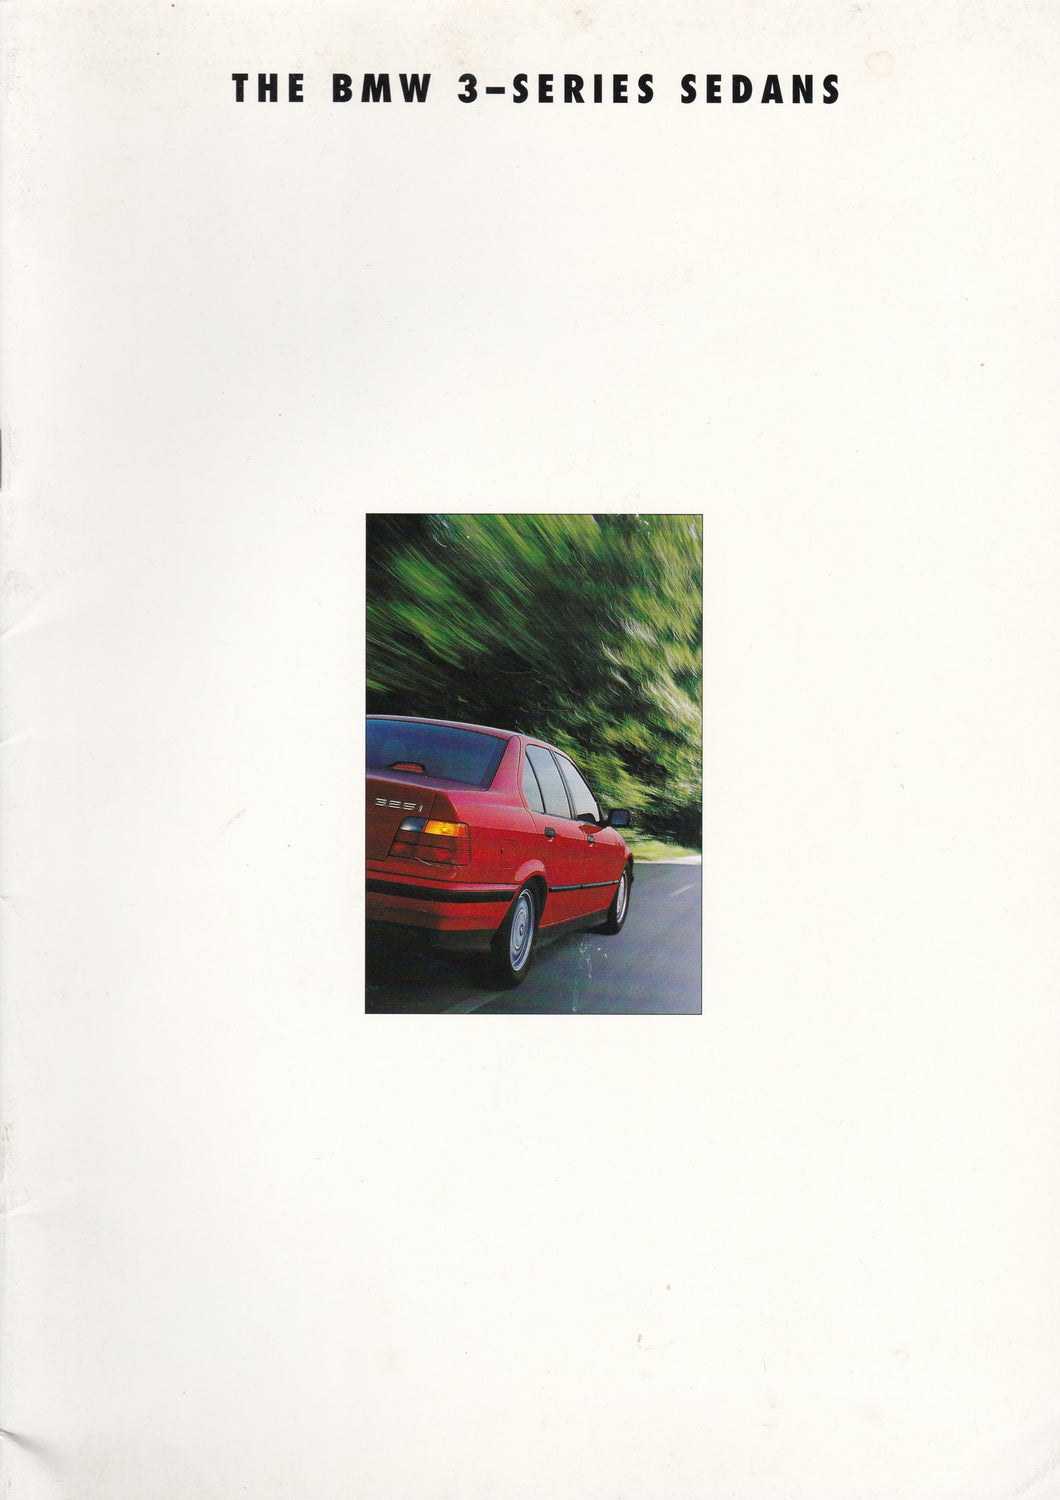 Brochure - The BMW 3-Series Sedans (1994)